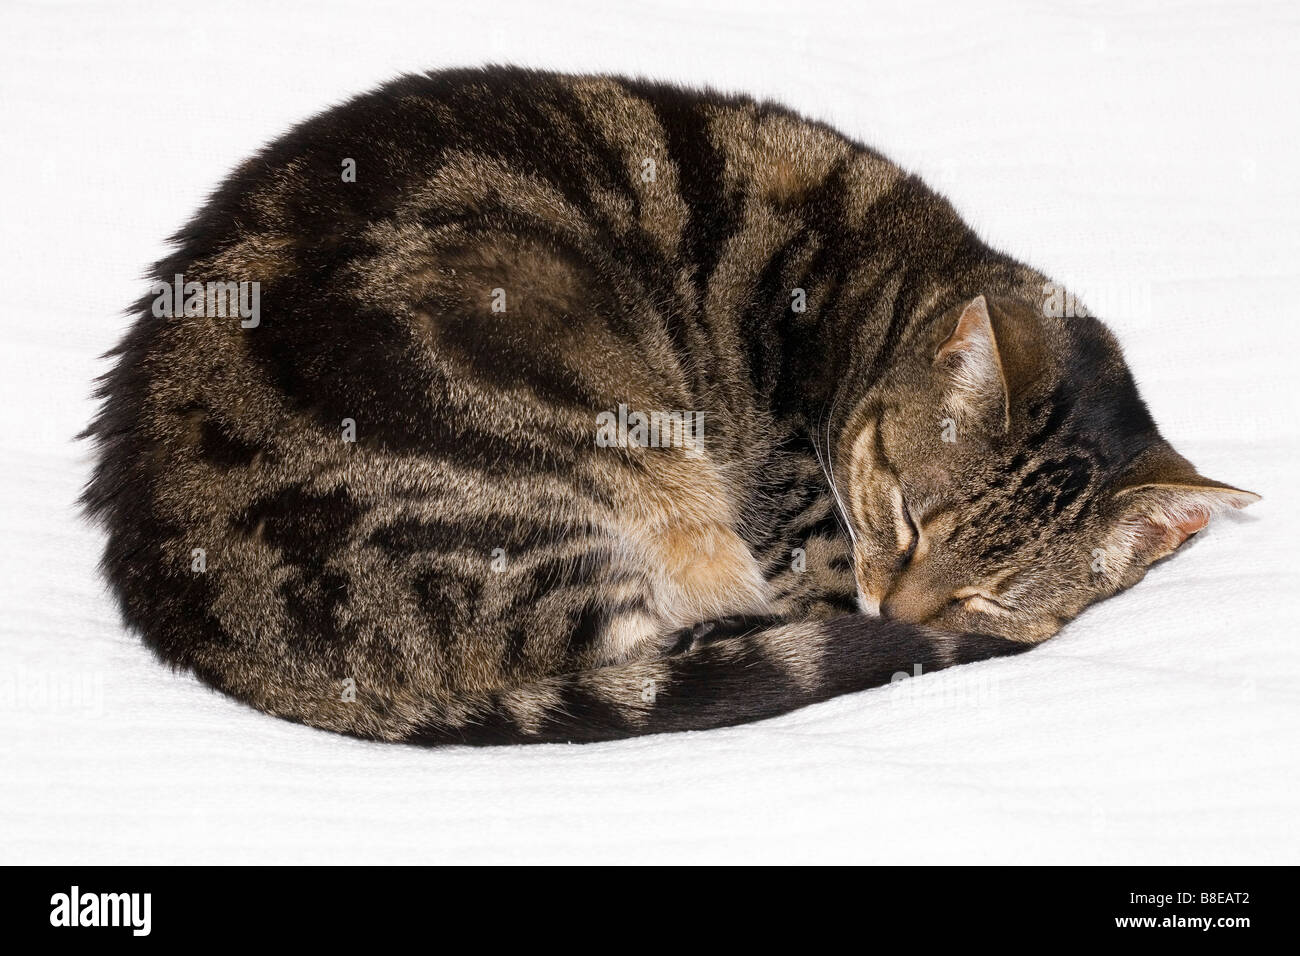 Gato atigrado durmiendo acurrucados Foto de stock